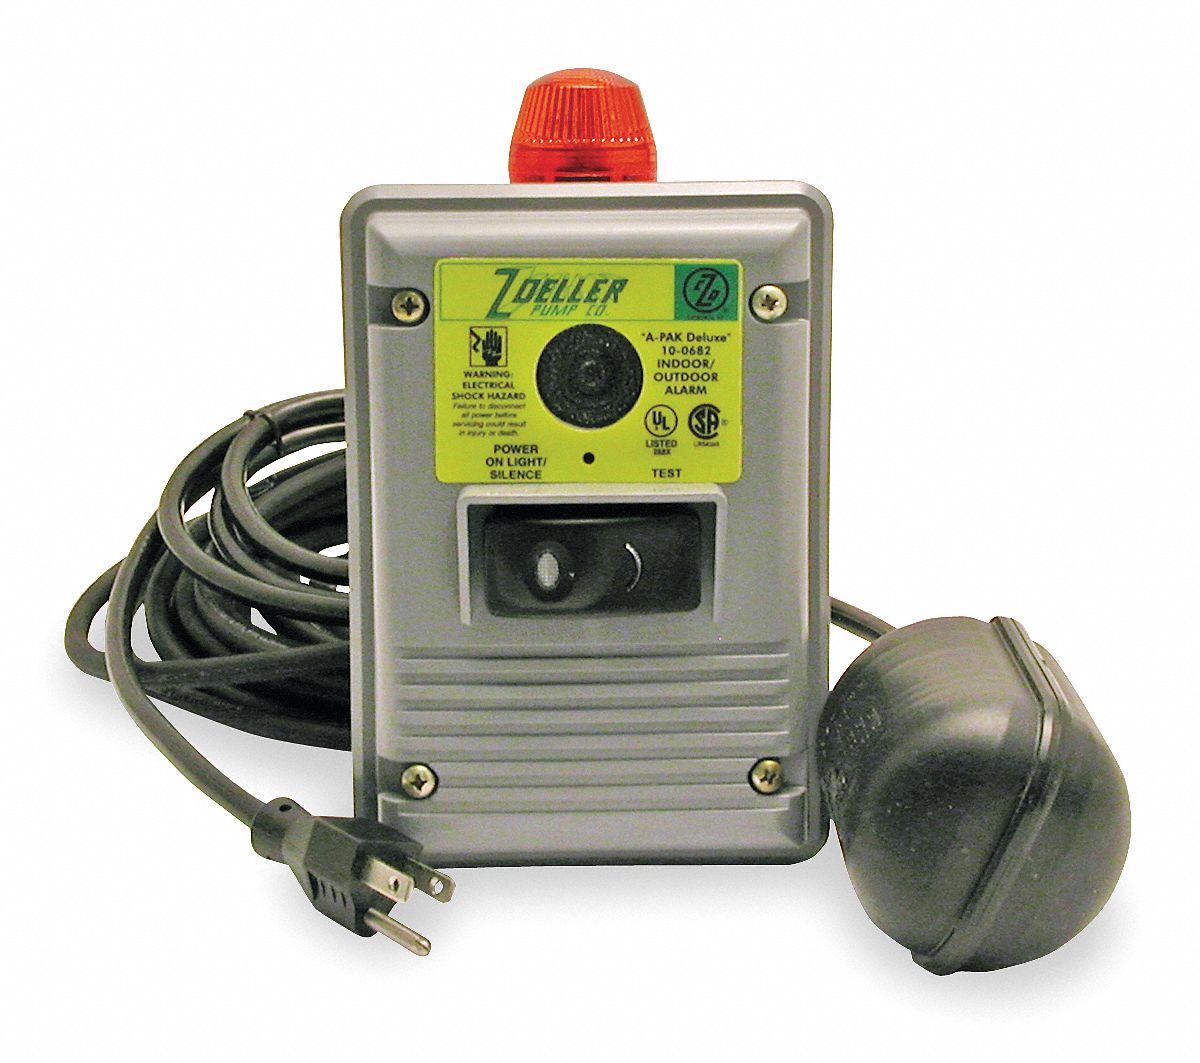 2VJ64 - Outdoor High Water Alarm Auto Reset